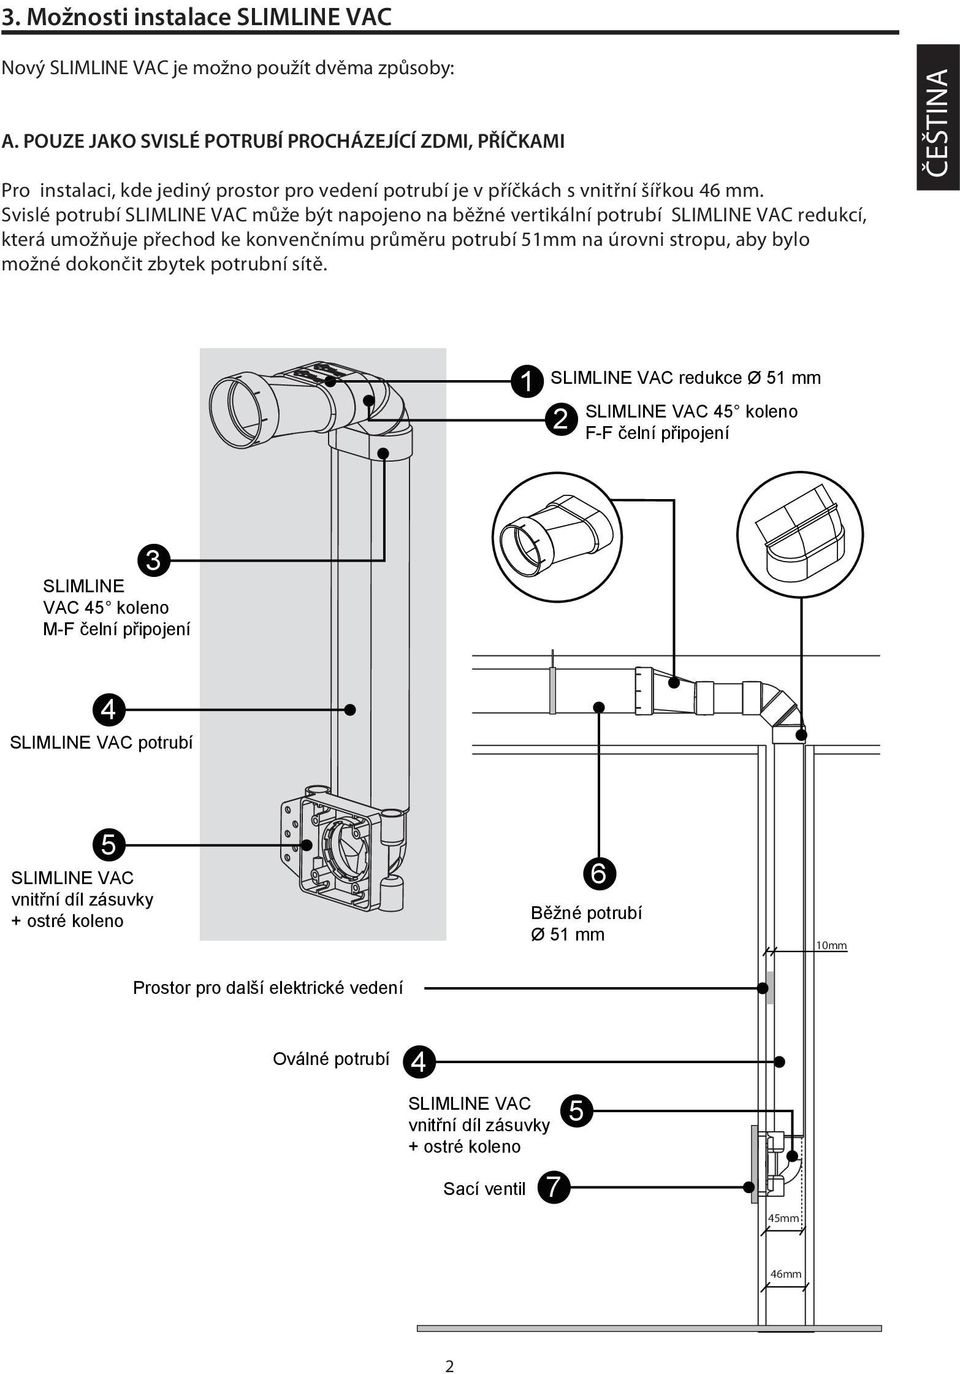 Svislé potrubí může být napojeno na běžné vertikální potrubí redukcí, která umožňuje přechod ke konvenčnímu průměru potrubí mm na úrovni stropu, aby bylo